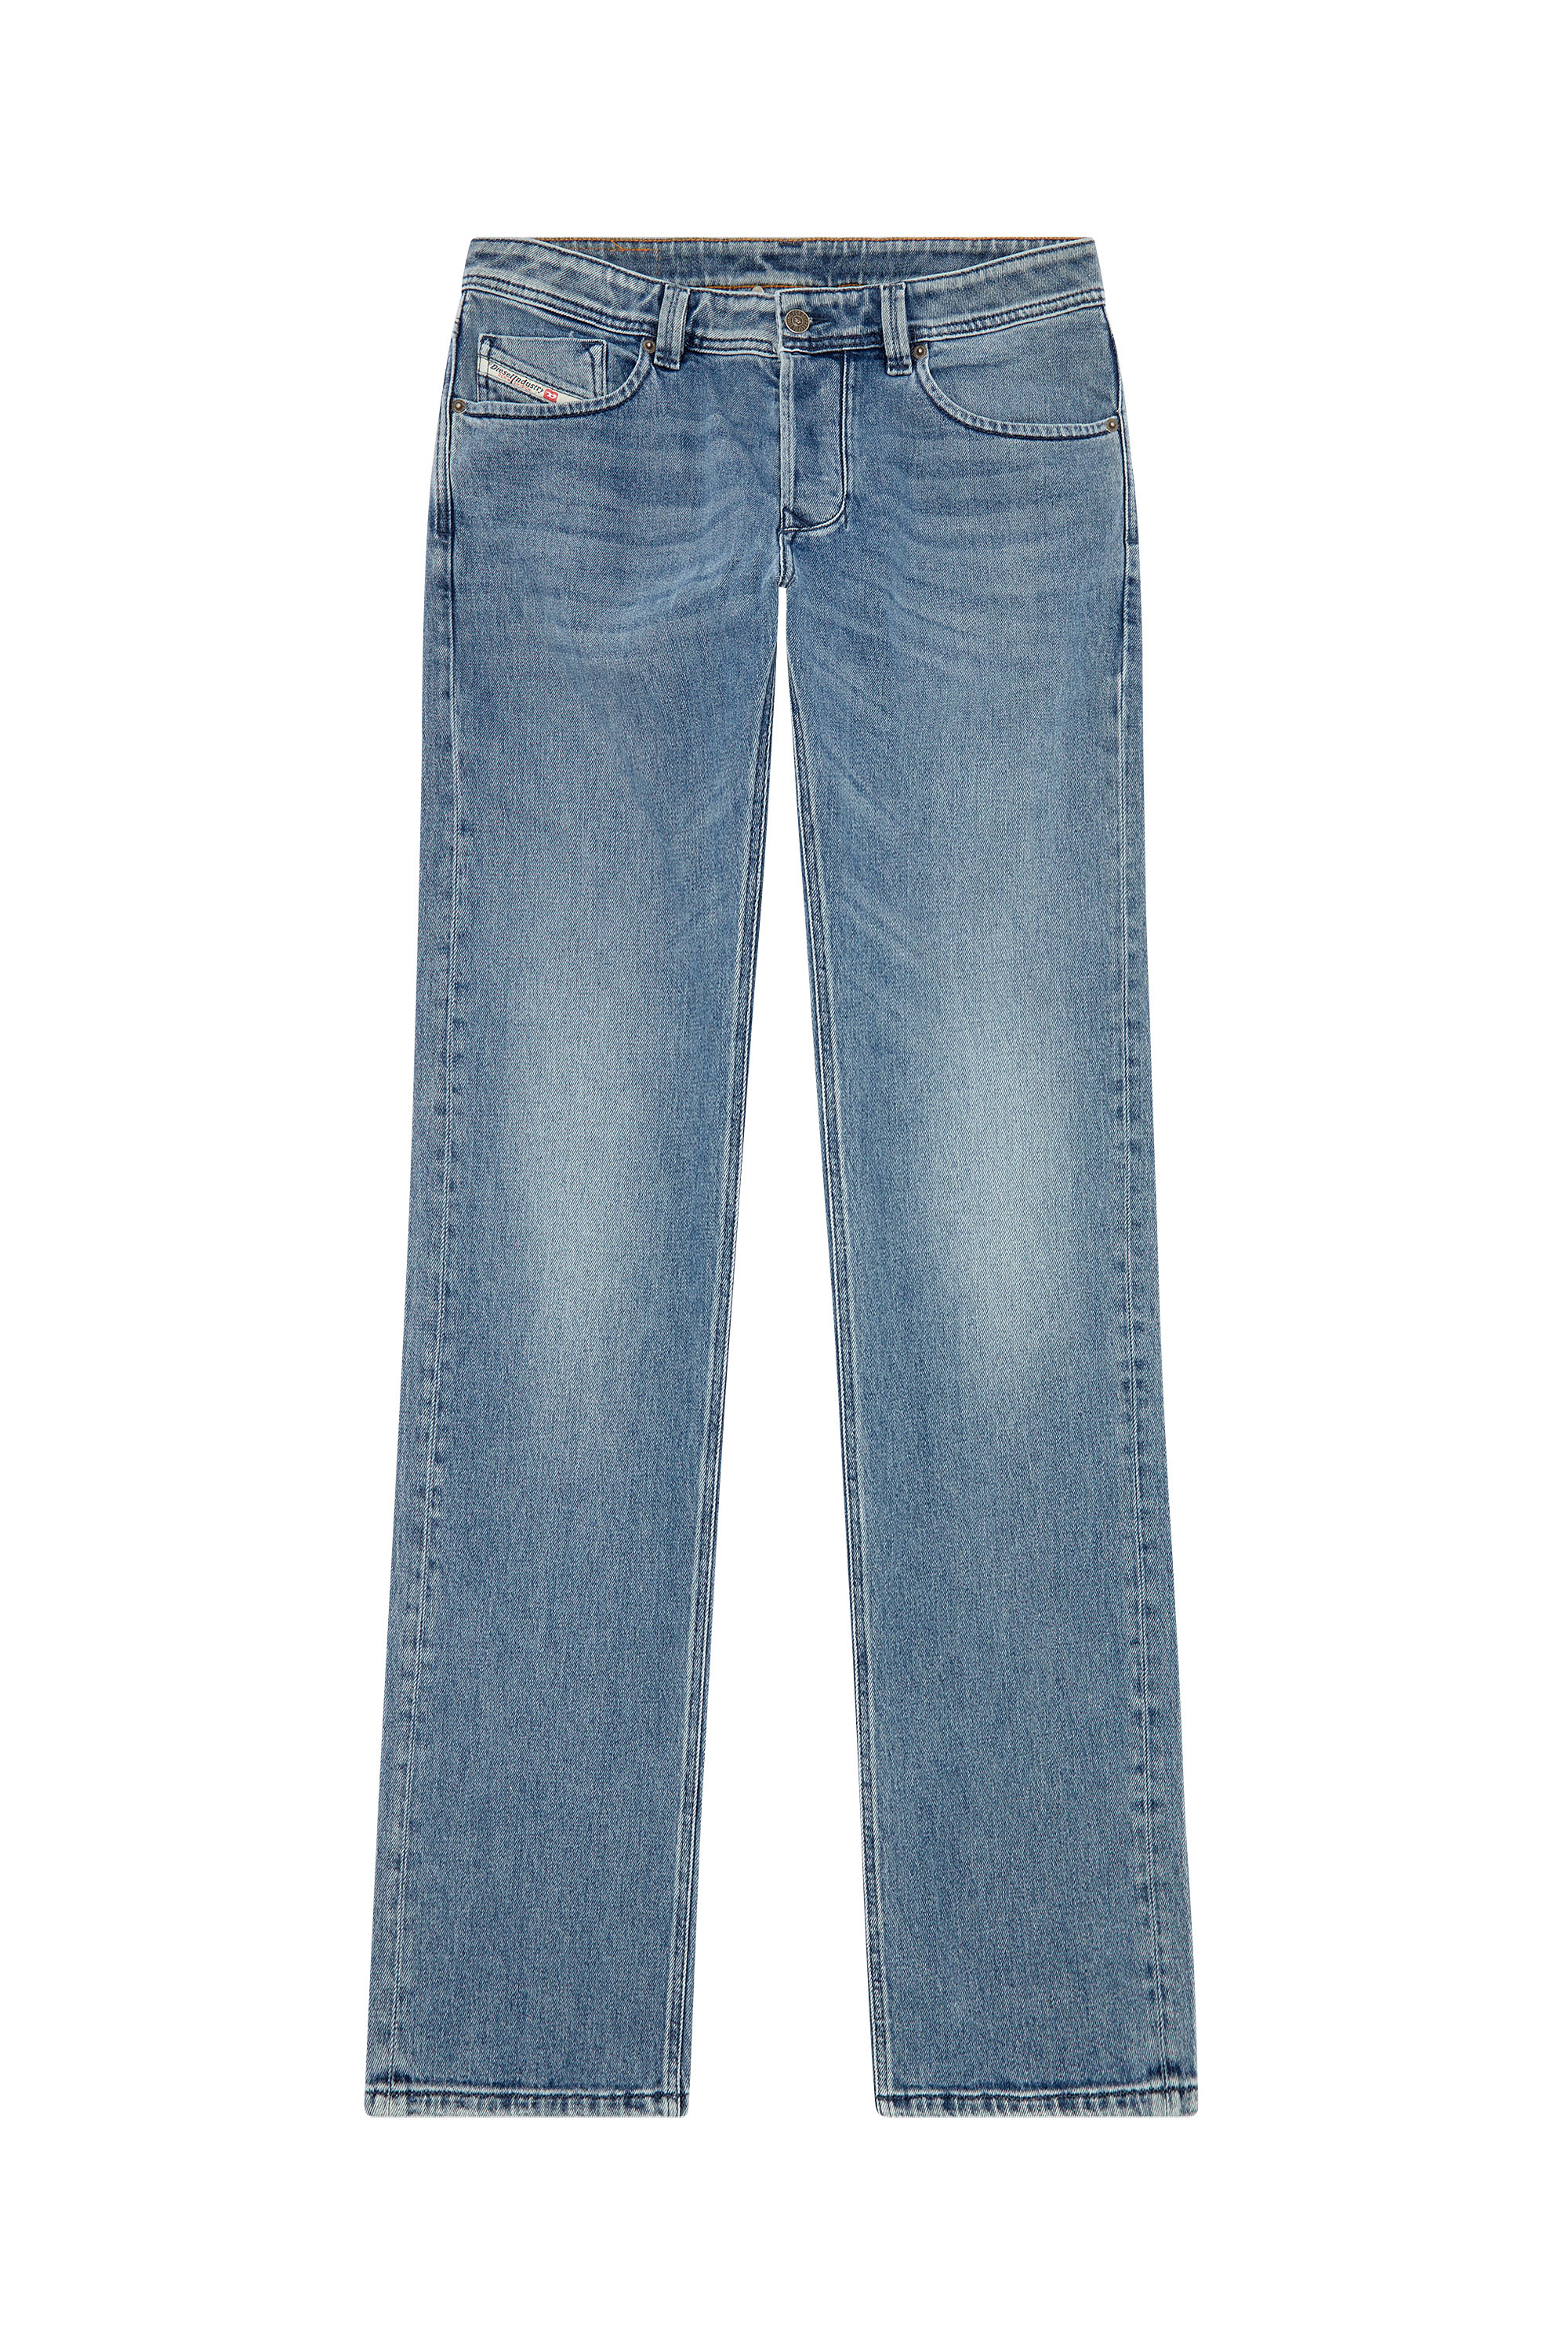 Diesel - Male Straight Jeans 1985 Larkee 09H30, Medium Blue - Image 6